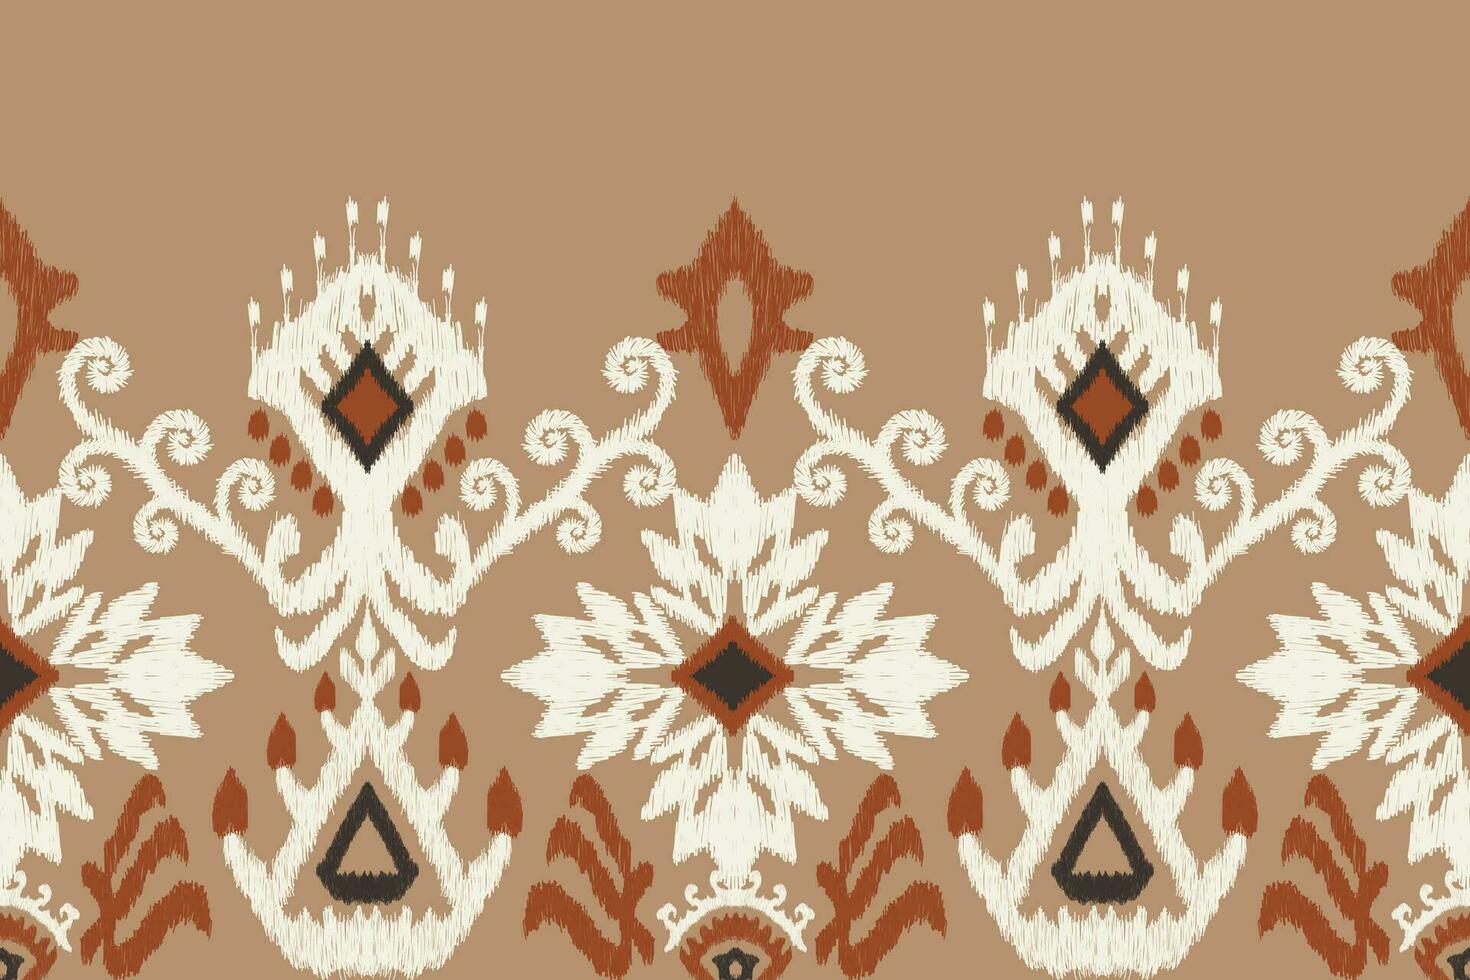 ikat floral cachemir bordado en marrón fondo.ikat étnico oriental modelo tradicional.azteca estilo resumen vector ilustración.diseño para textura,tela,ropa,envoltura,decoración,pareo,bufanda